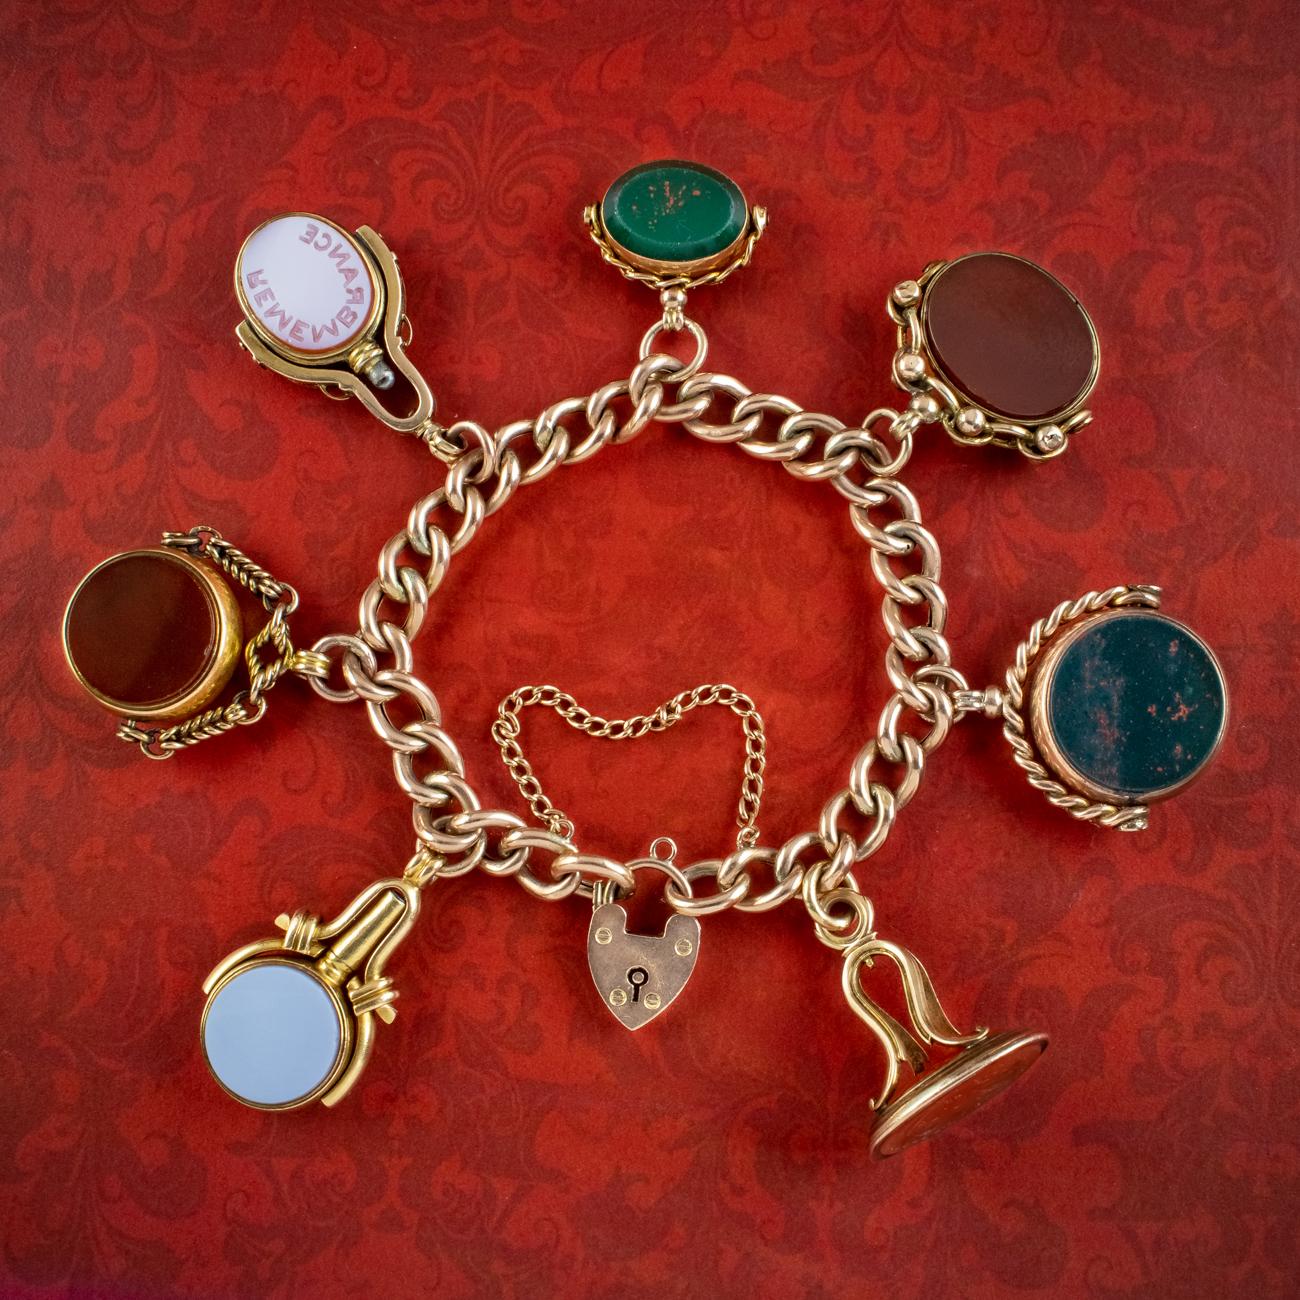 Ein bemerkenswertes antikes viktorianisches Armband aus 9 Karat Gold aus dem späten 19. Jahrhundert mit sieben einzigartigen Anhängern, von denen zwei die Form von Uhrenschlüsseln haben. Jeder Anhänger kann gedreht werden und ist beidseitig mit